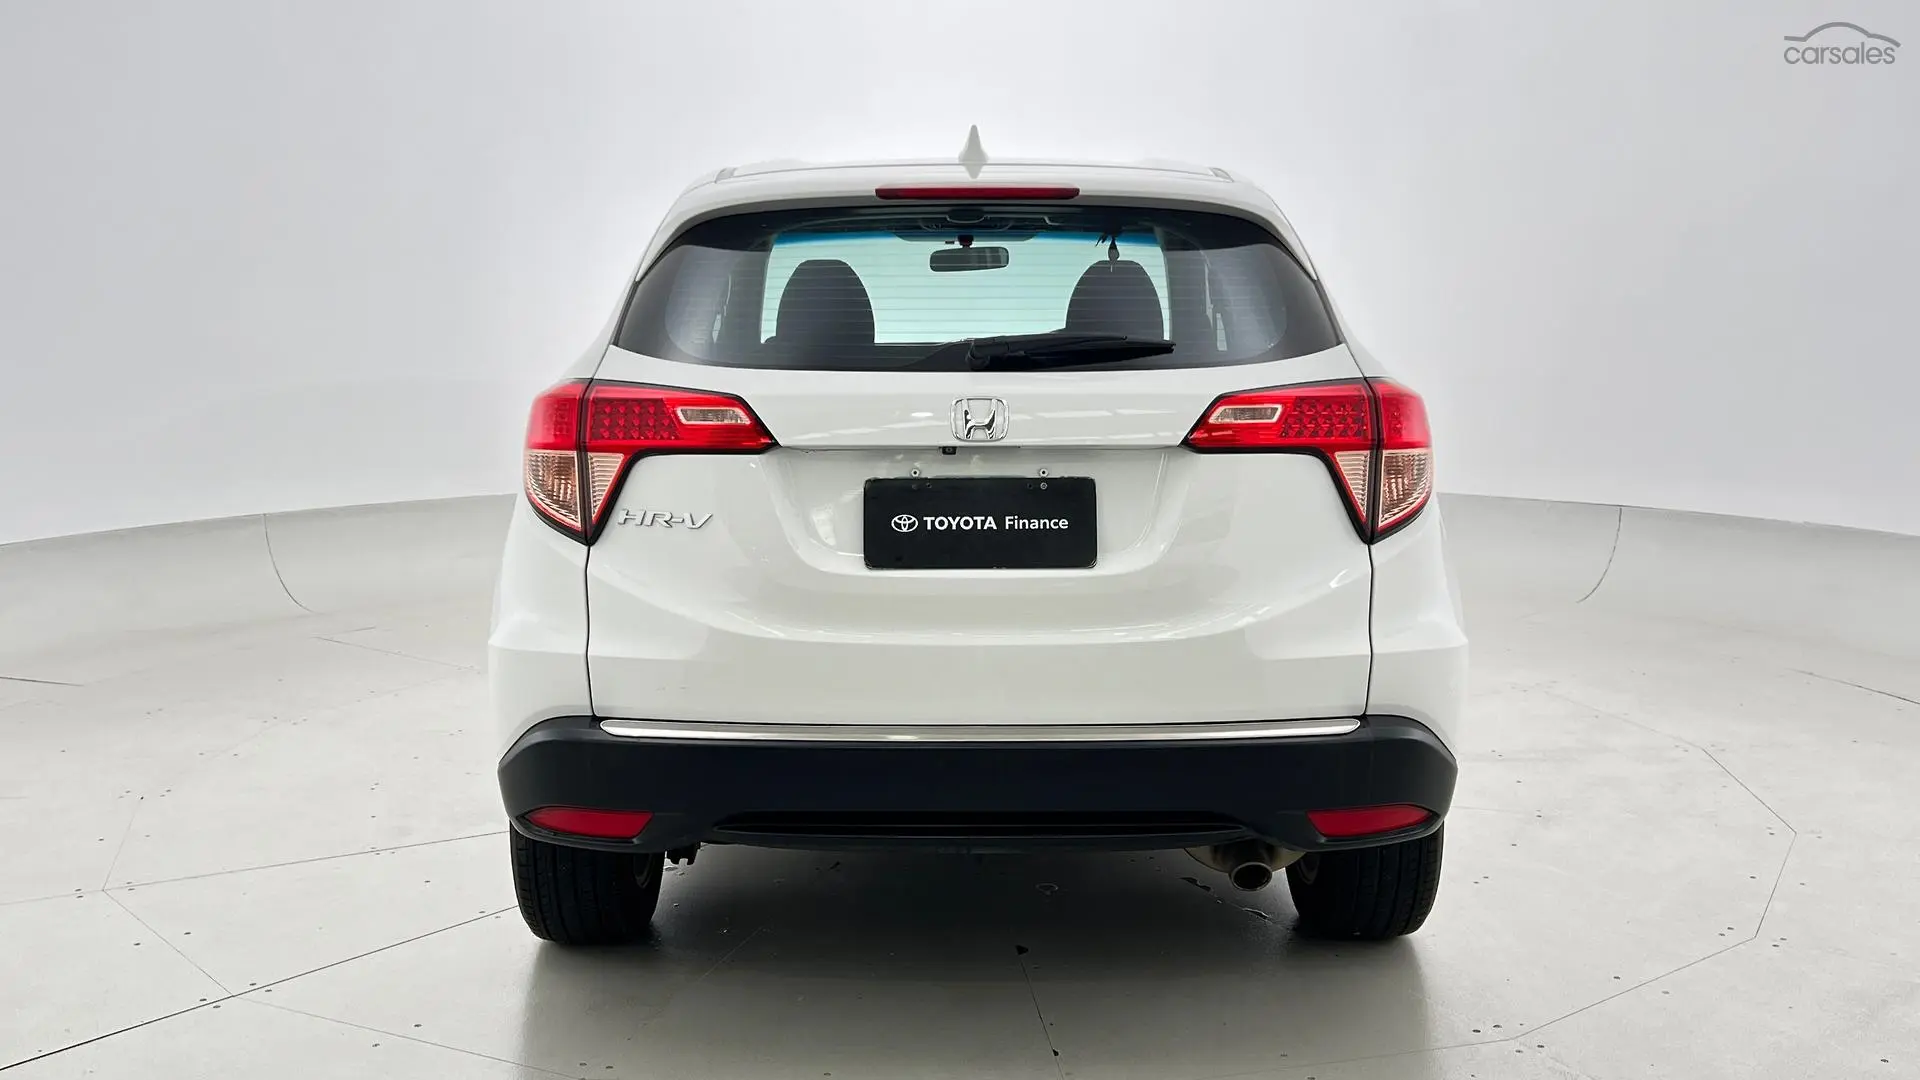 2018 Honda HR-V Image 6